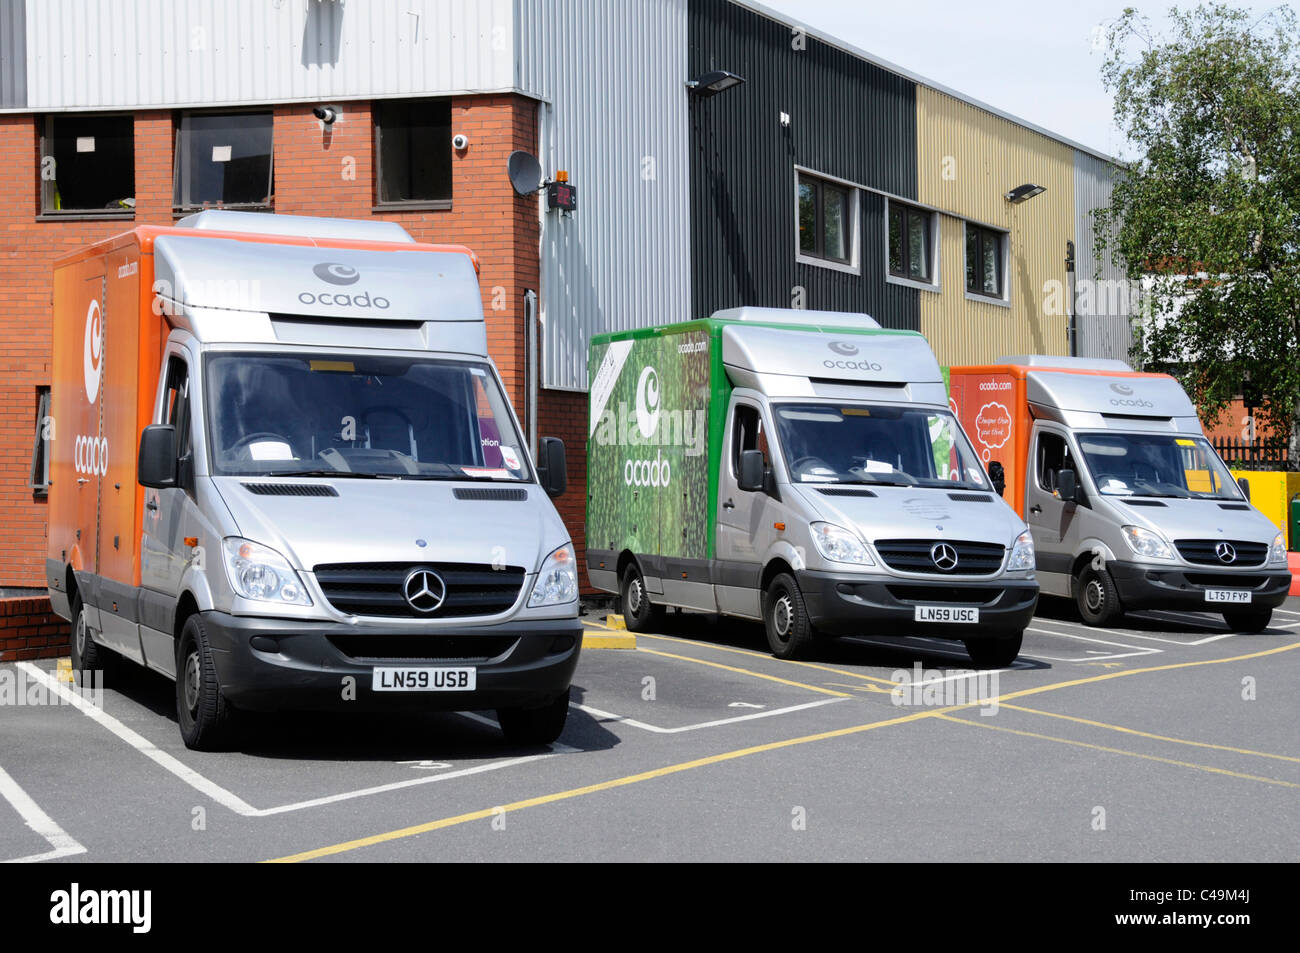 Supermarché d'alimentation en ligne Ocado camionnettes garées à dépôt d'entrepôt à l'ouest de Londres Angleterre Royaume-uni Banque D'Images